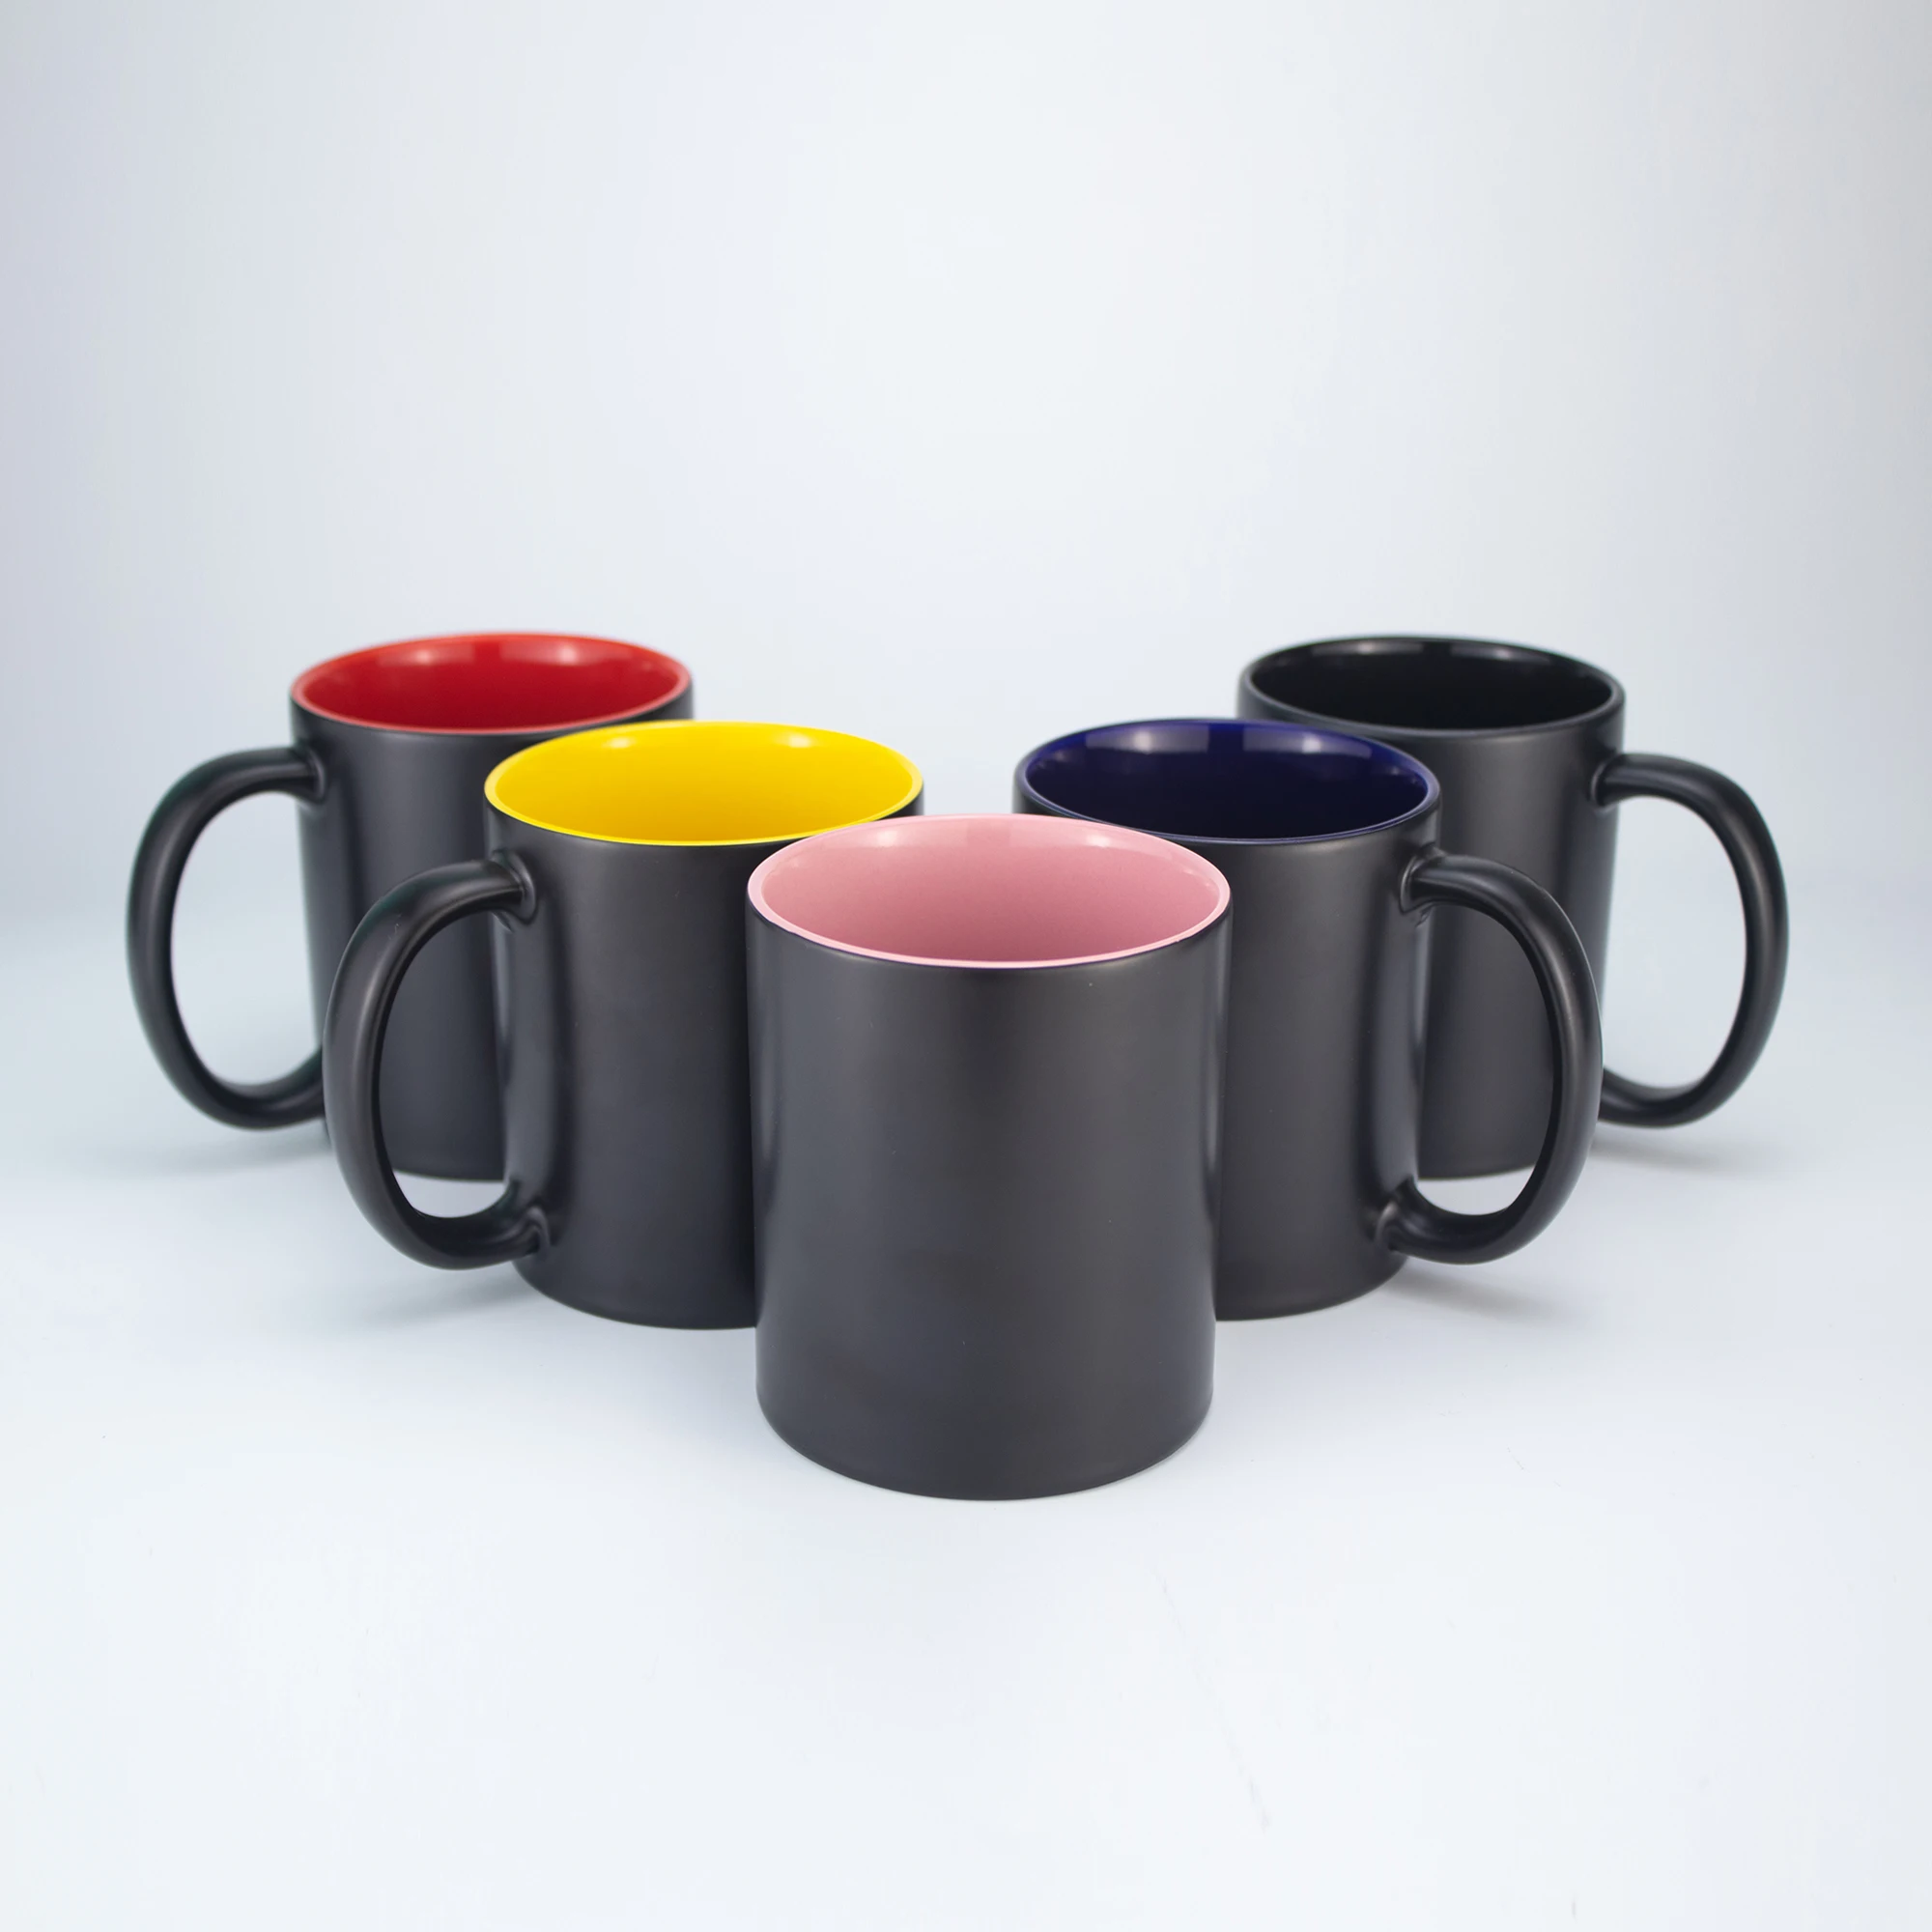 

Inner Colorful Color Change Mugs Heat Sensitive Black Sublimation Coated Ceramic 11oz Semi-sanding Color Changing Mug, Black, blue, red